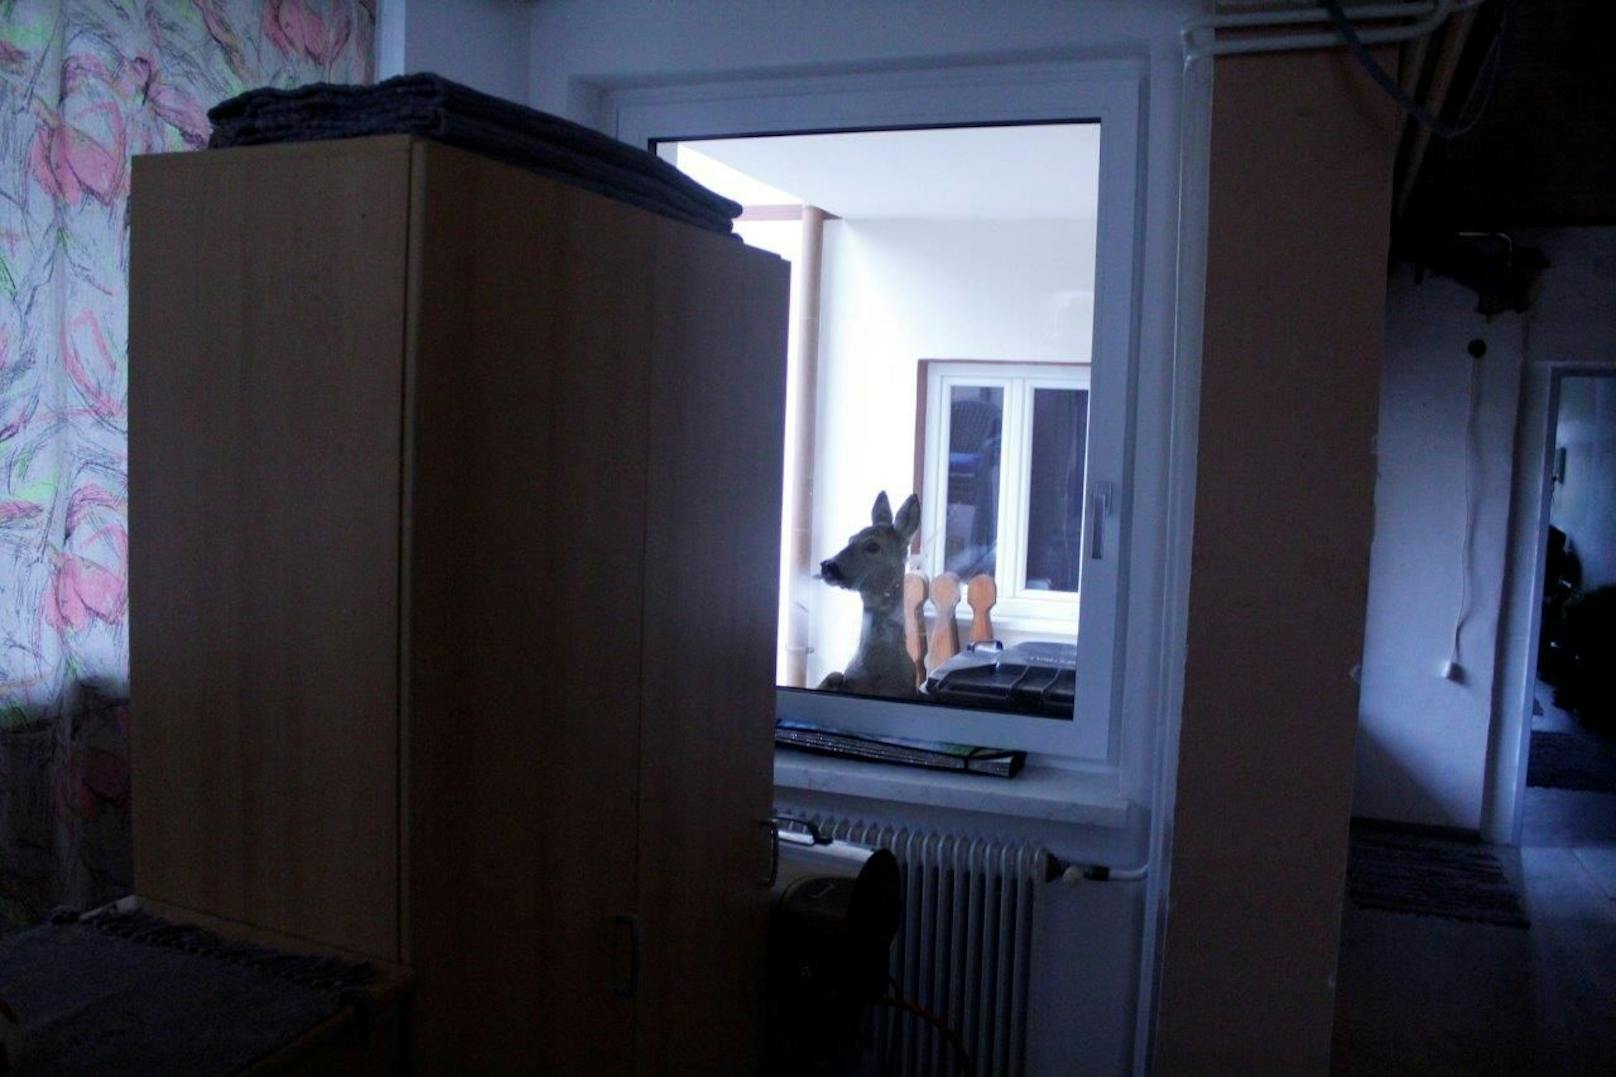 Neugierig blickte das Tier beim Fenster herein.